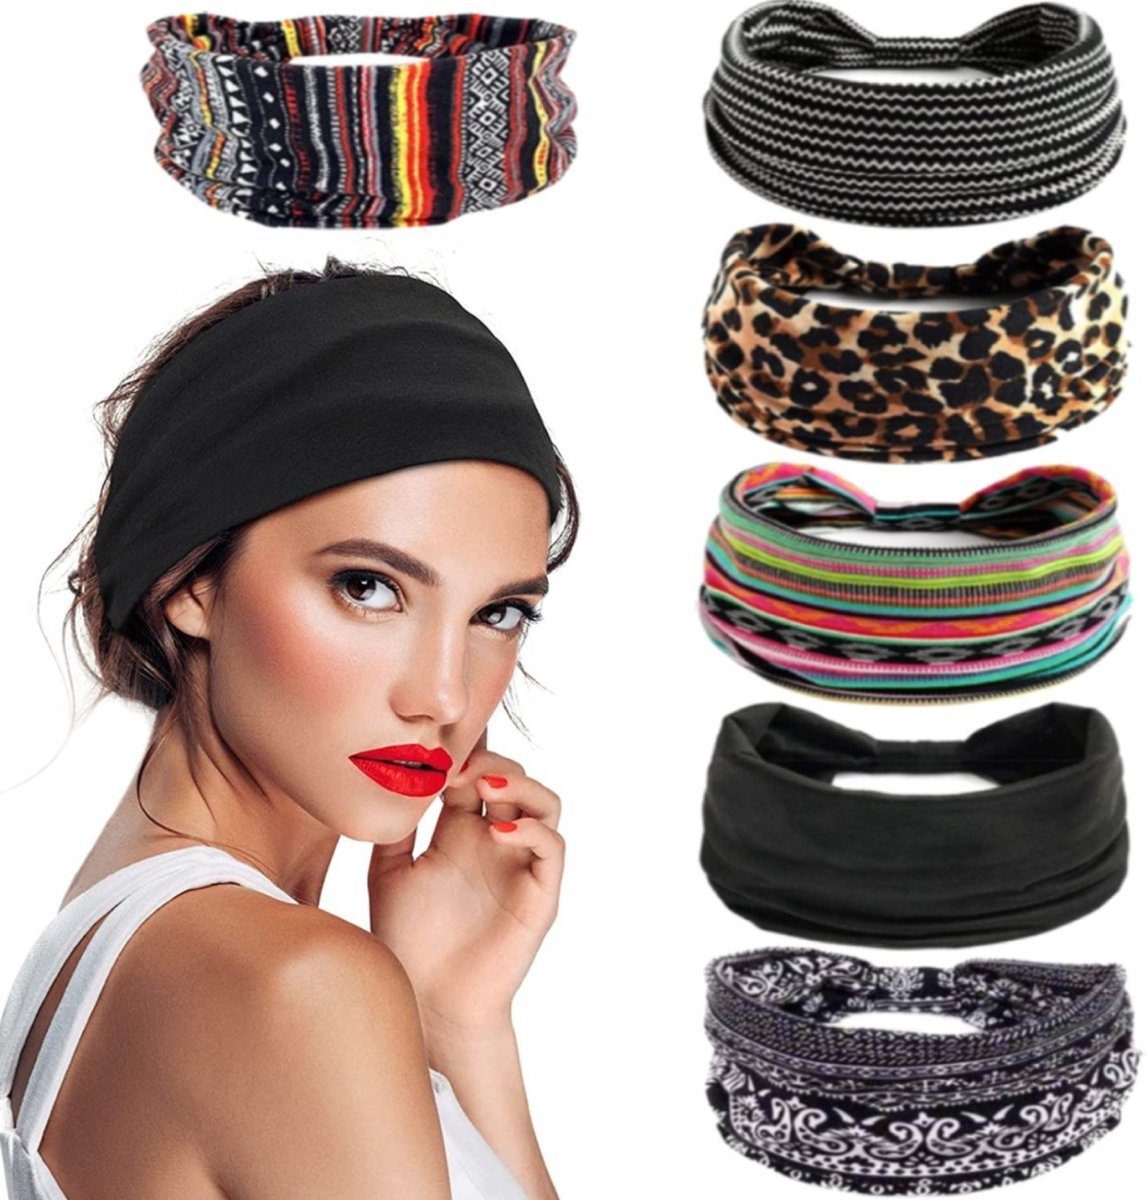 BOTC Stirnband Damen Boho Stirnbänder Kopfband elastisch weich (6-teiliges Set, Sport Yoga Haarbändern) Haarband, Damenhaarbänder – 23*10CM, 6 Farbmischungen | Stirnbänder